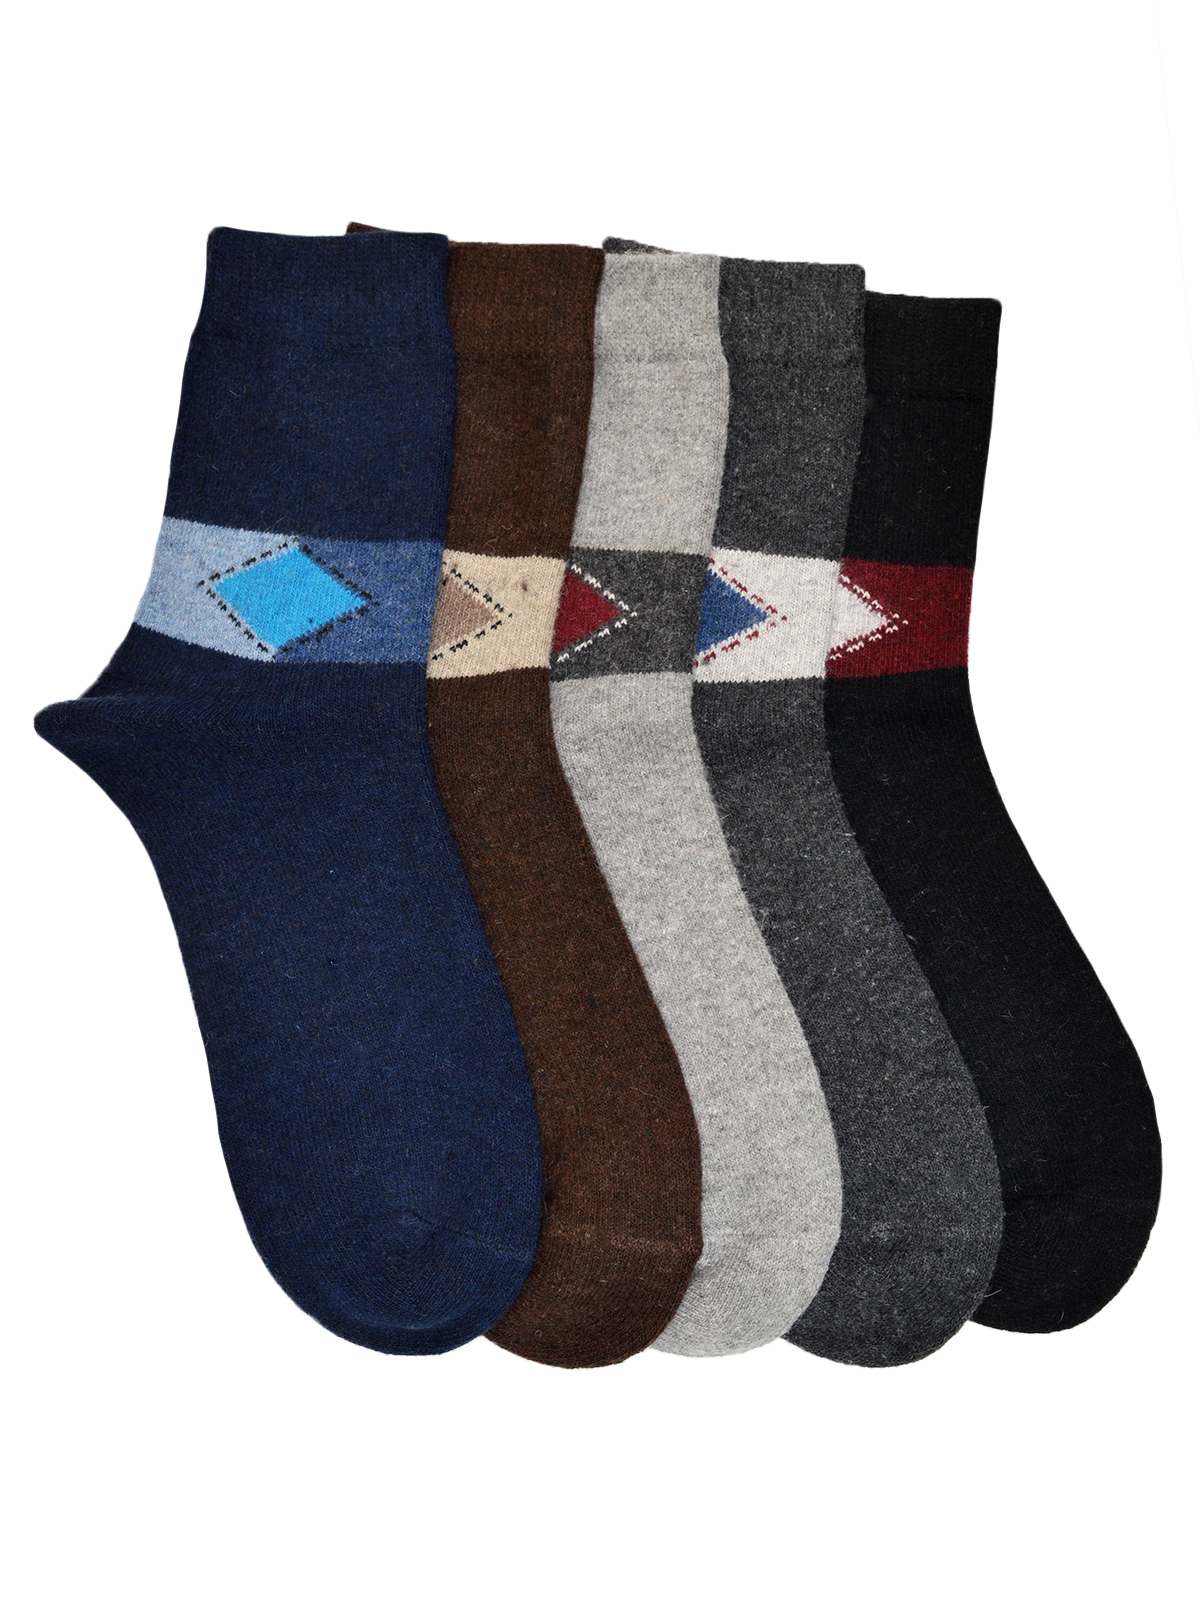 Acrowool Woolen Center Motif Socks6